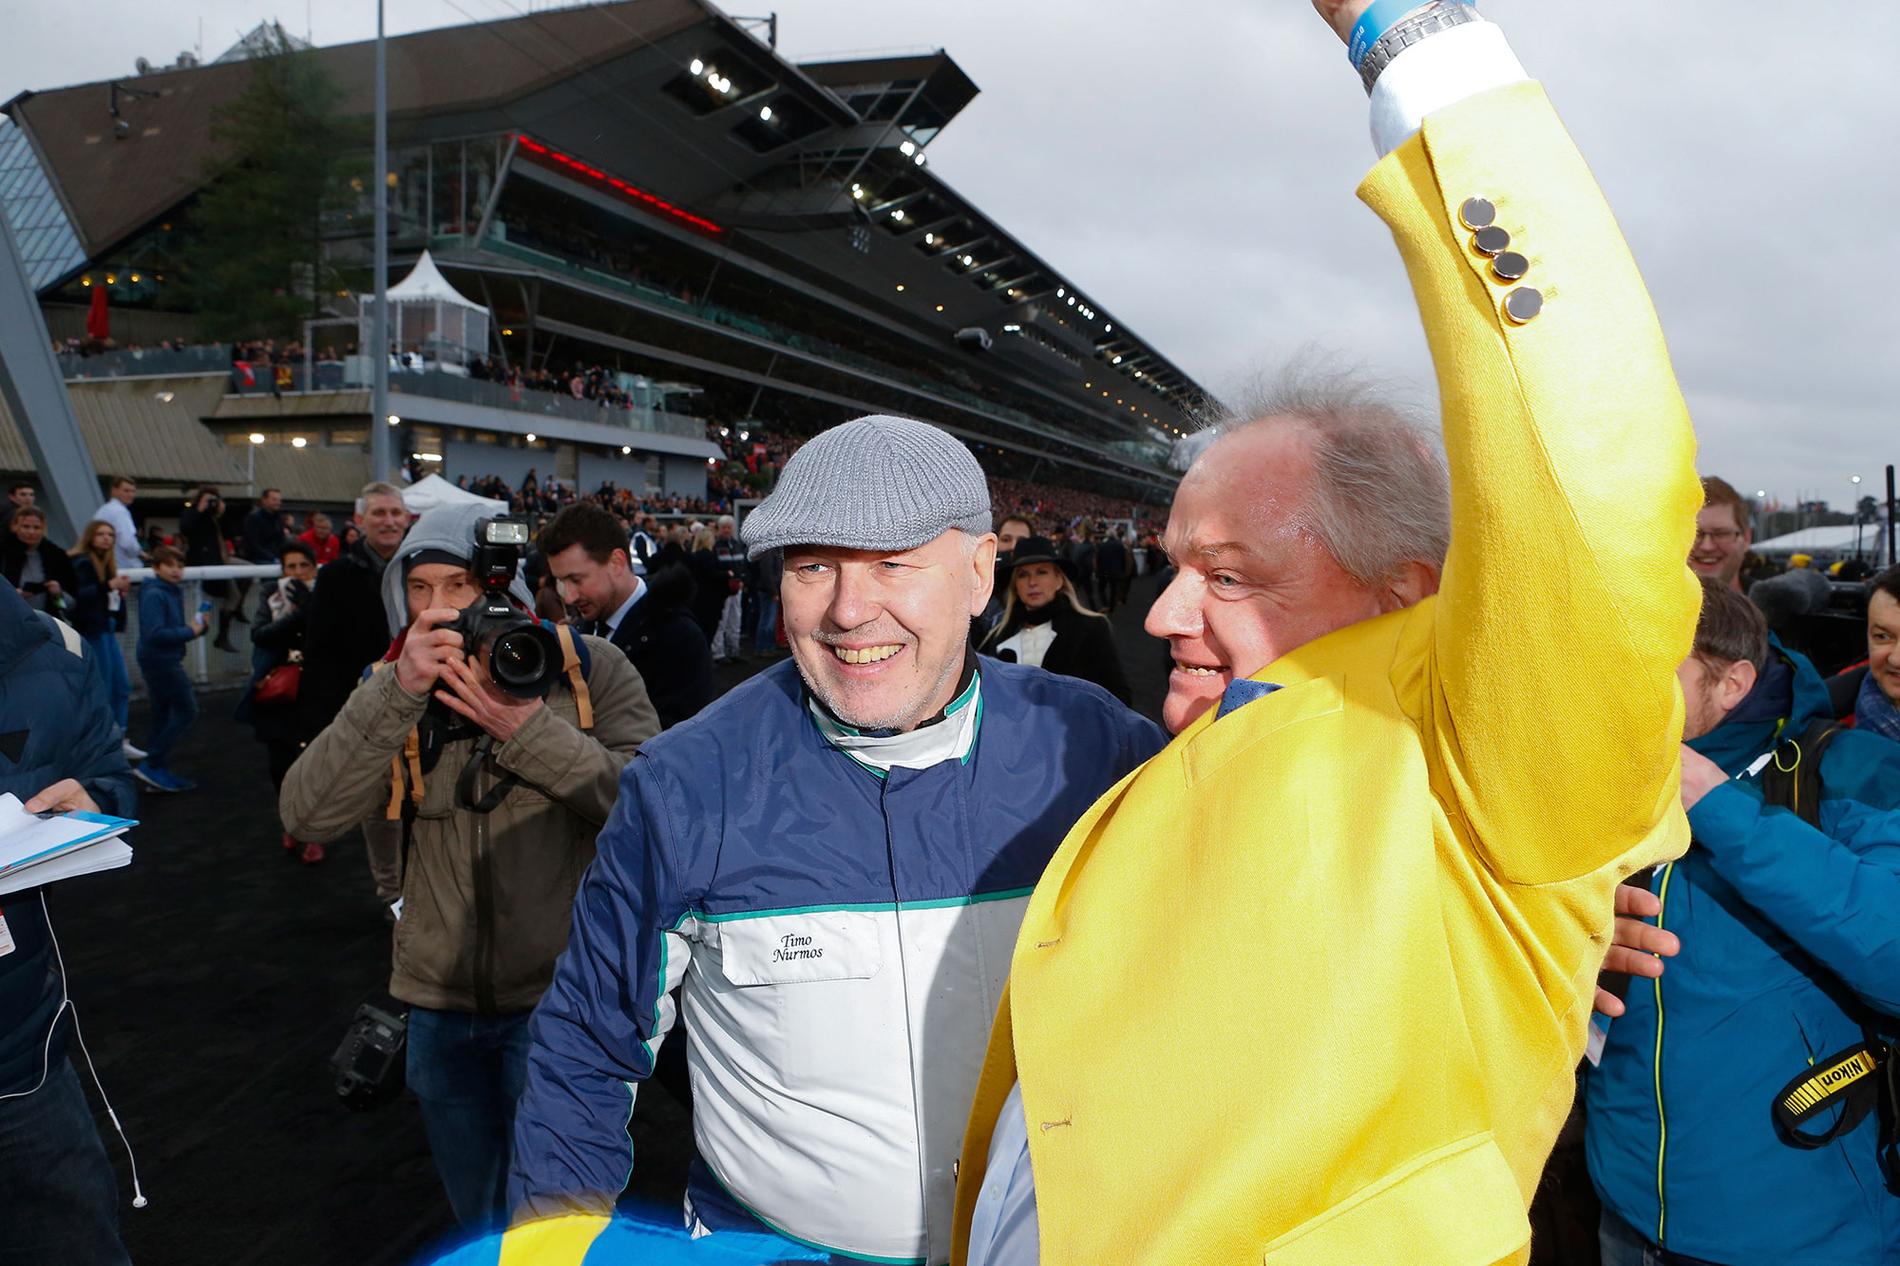 Readly Express ägaren Rolf Andersson i gul kavaj och tränaren Timo Nurmos jublar efter segern i Prix d’Amérique 2018. Nu siktas hästen mot Elitloppet.